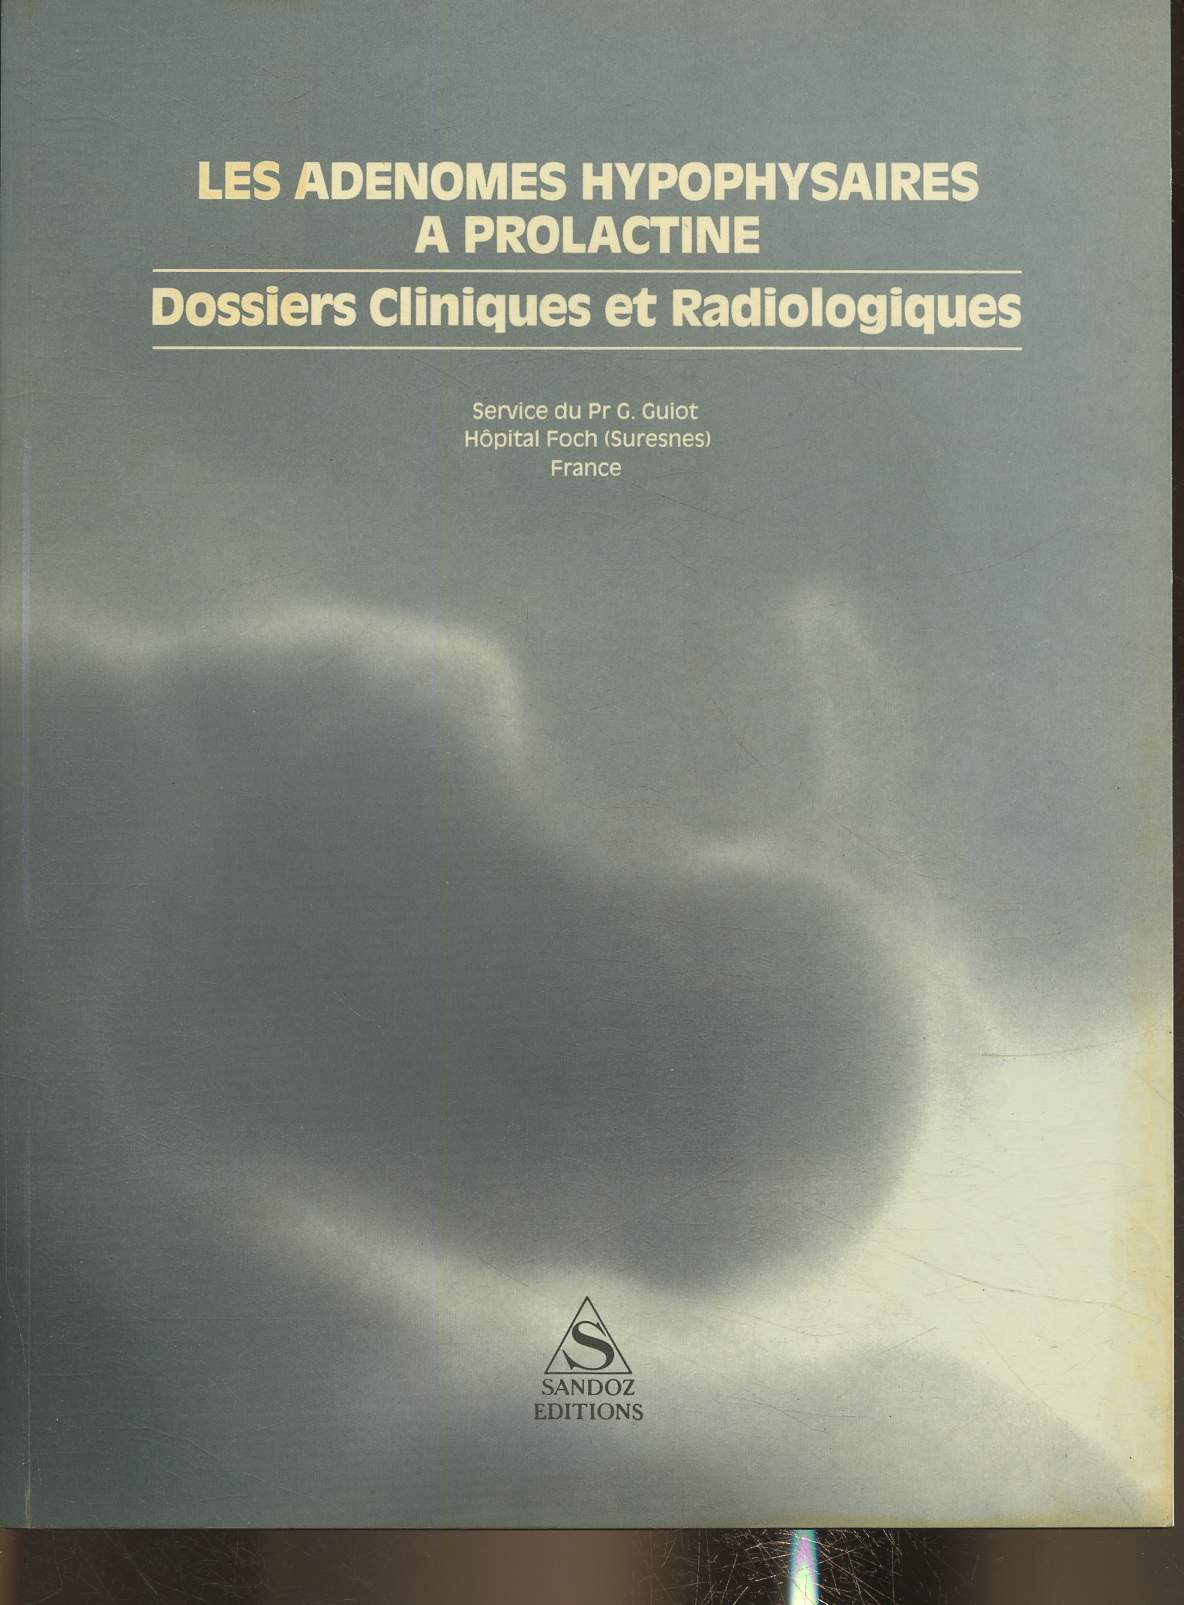 Les adenomes hypophysaires a prolactine- Dossiers cliniques et radiologiques- Service du Pr G. Guiot hopital Foch (Suresnes)